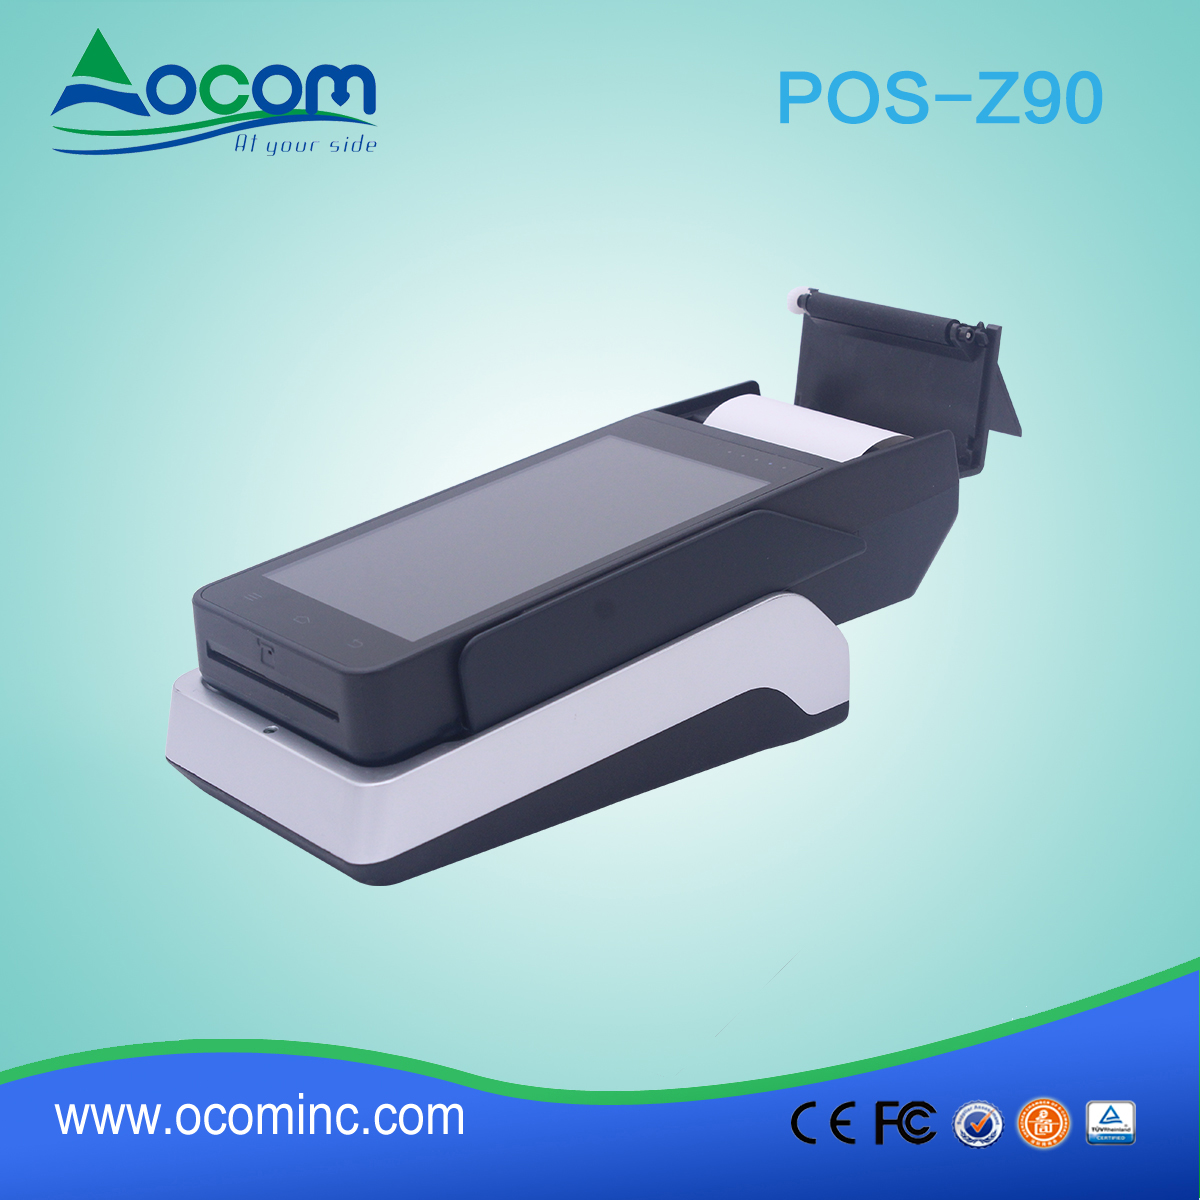 OCOM POS -Z90 alles in een handheld android pos-terminal met printer en nfc-lezer